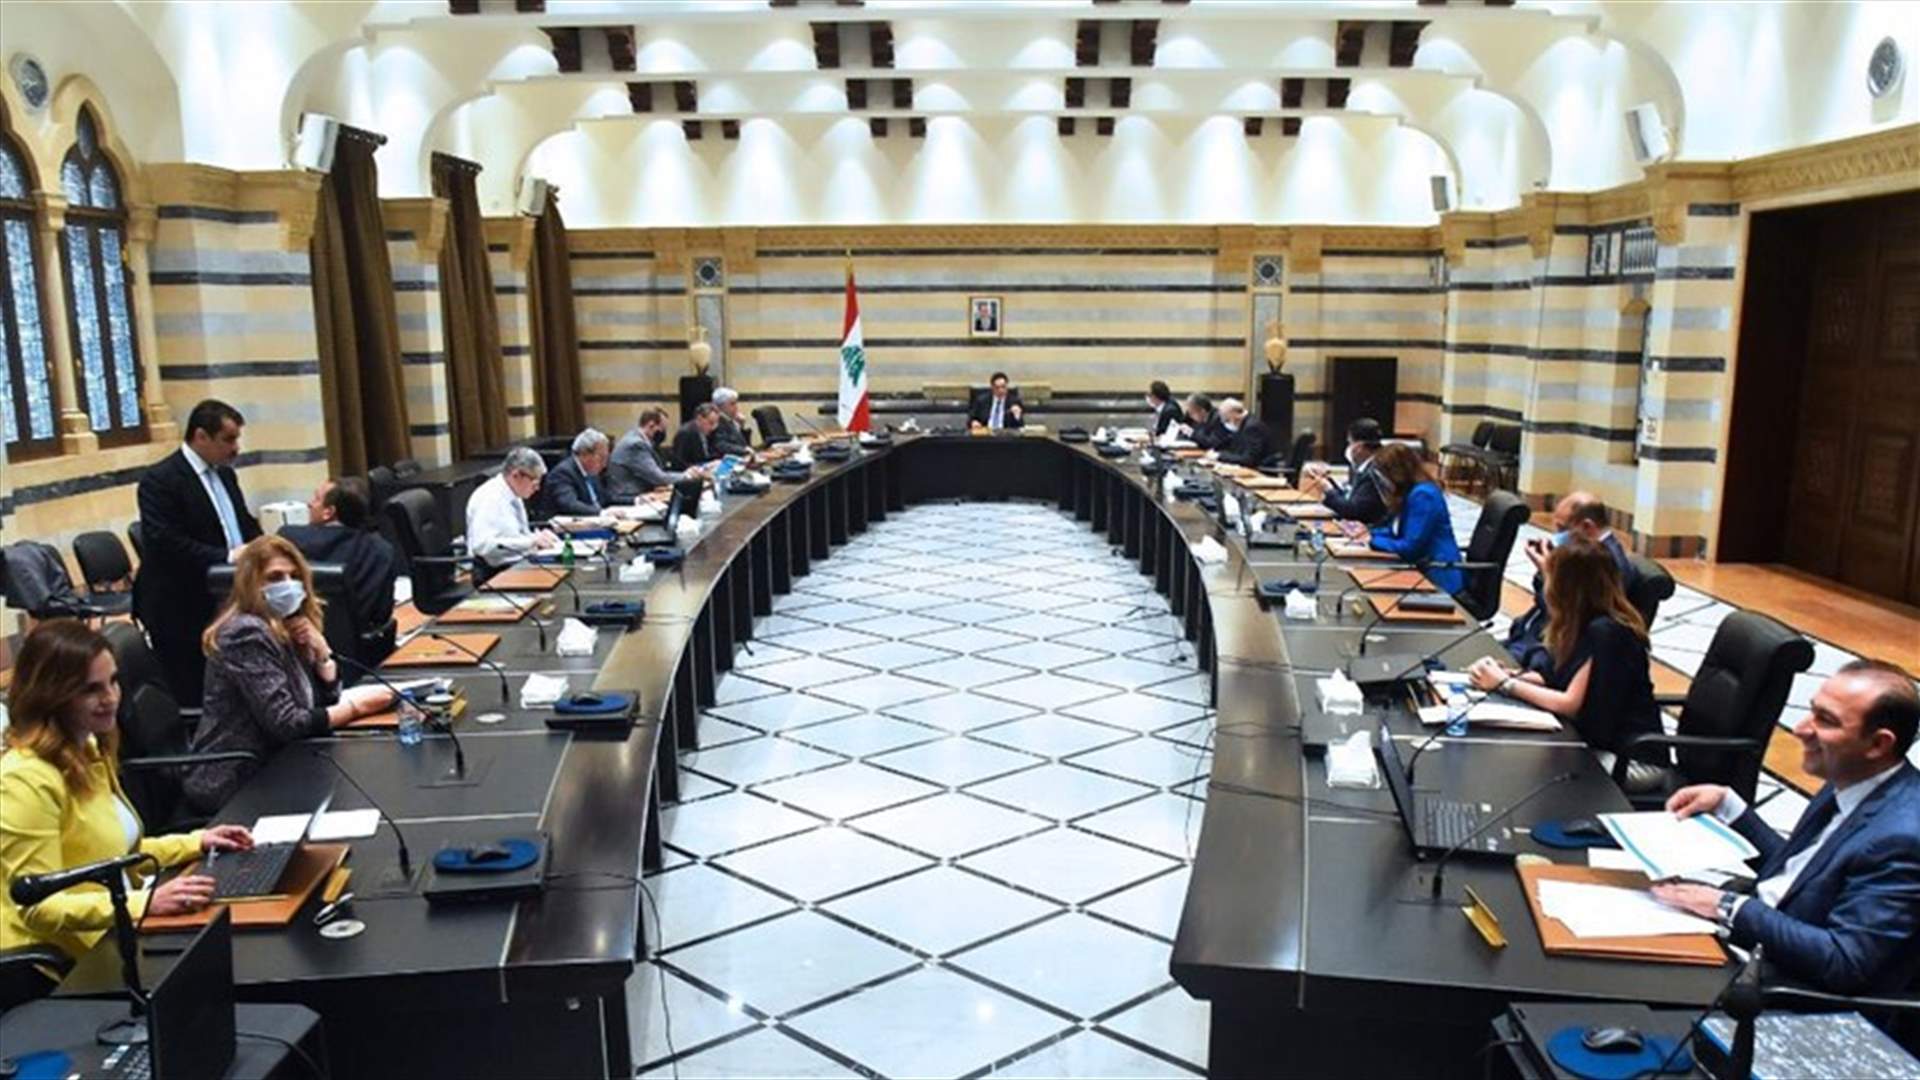 Cabinet convenes under Diab&#39;s chairmanship